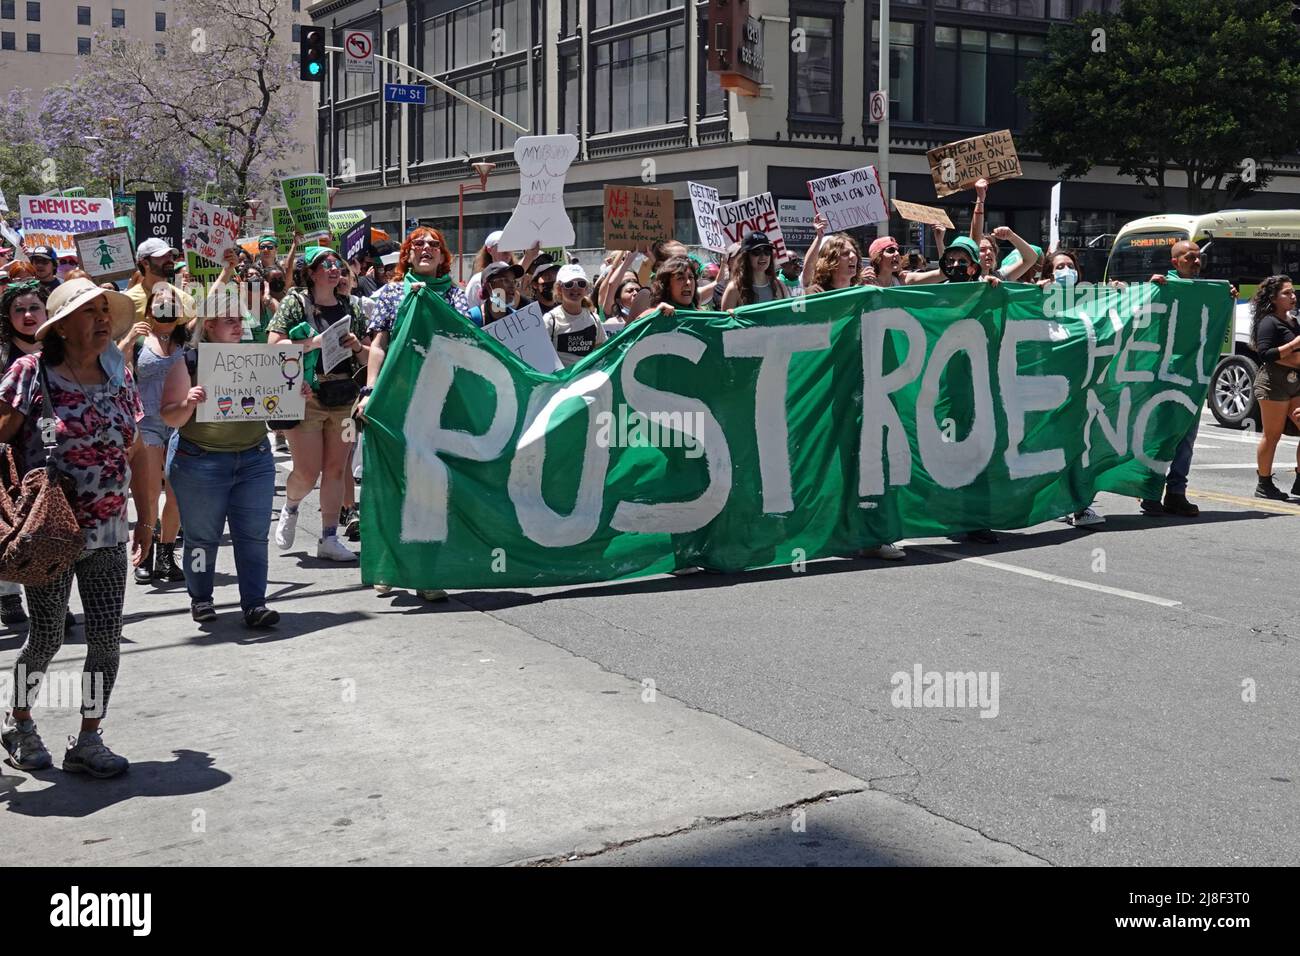 Los Angeles, CA / USA - 14. Mai 2022: Demonstranten, die die reproduktiven Rechte von Frauen unterstützen, werden während der Proteste gegen das Verbot unserer Körper in L.A. gezeigt Stockfoto